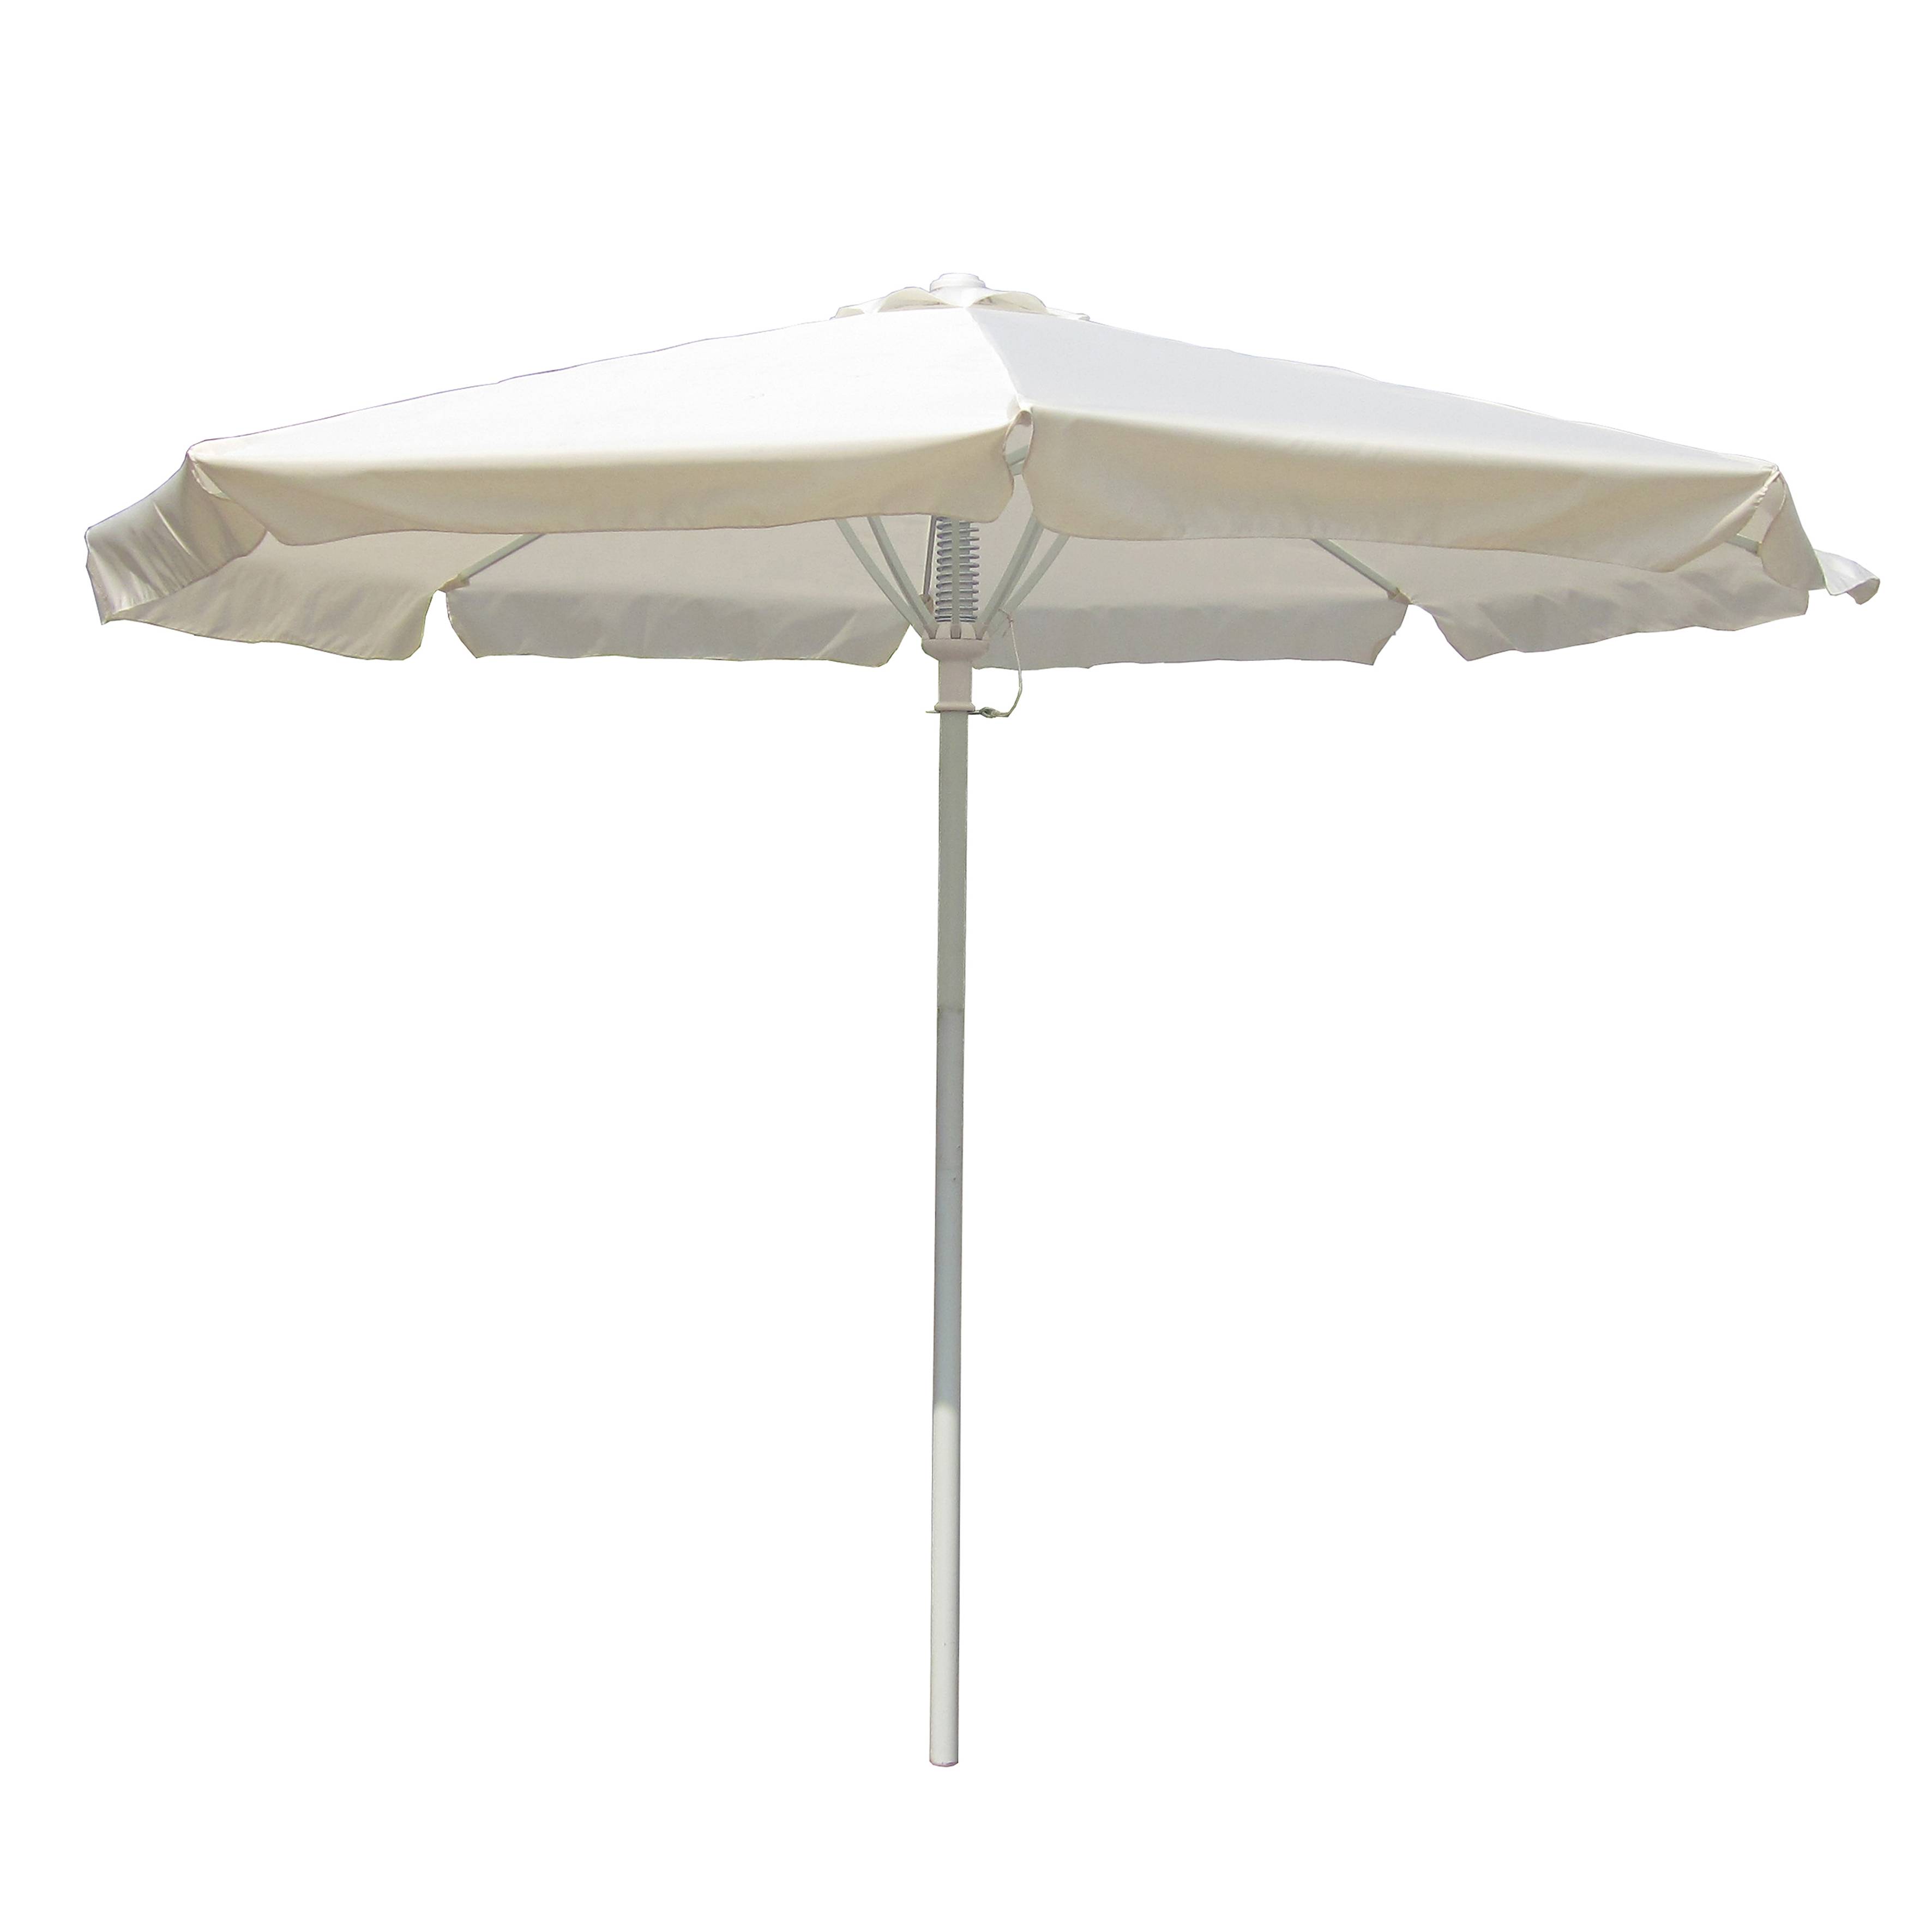 Cheap price Beige Beach Umbrella – Outdoor Garden Sun Umbrella Patio Umbrella Parasol – Top Asian